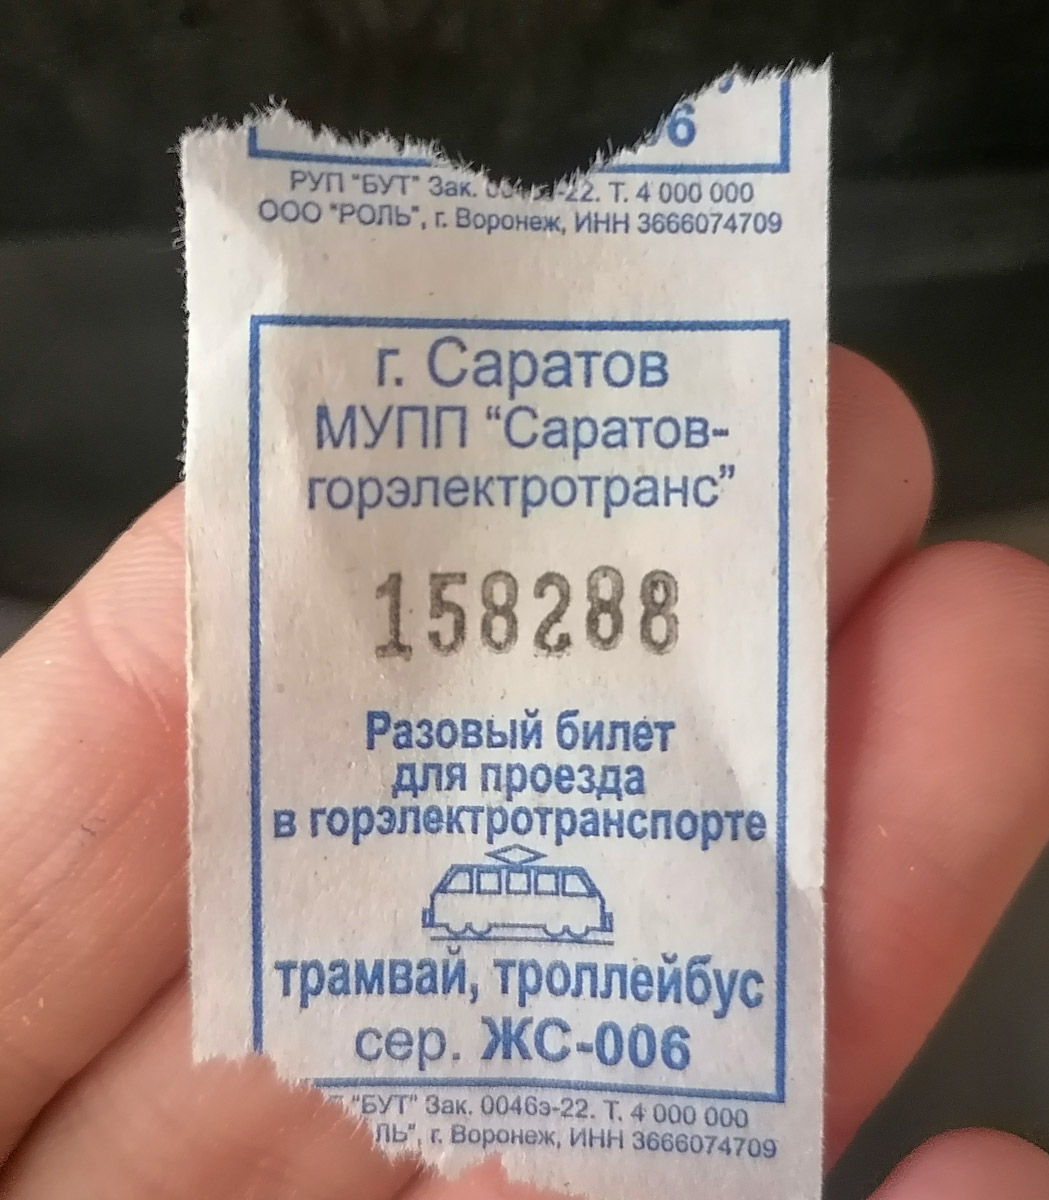 Саратов. Разовый билет для проезда в городском электротранспорте